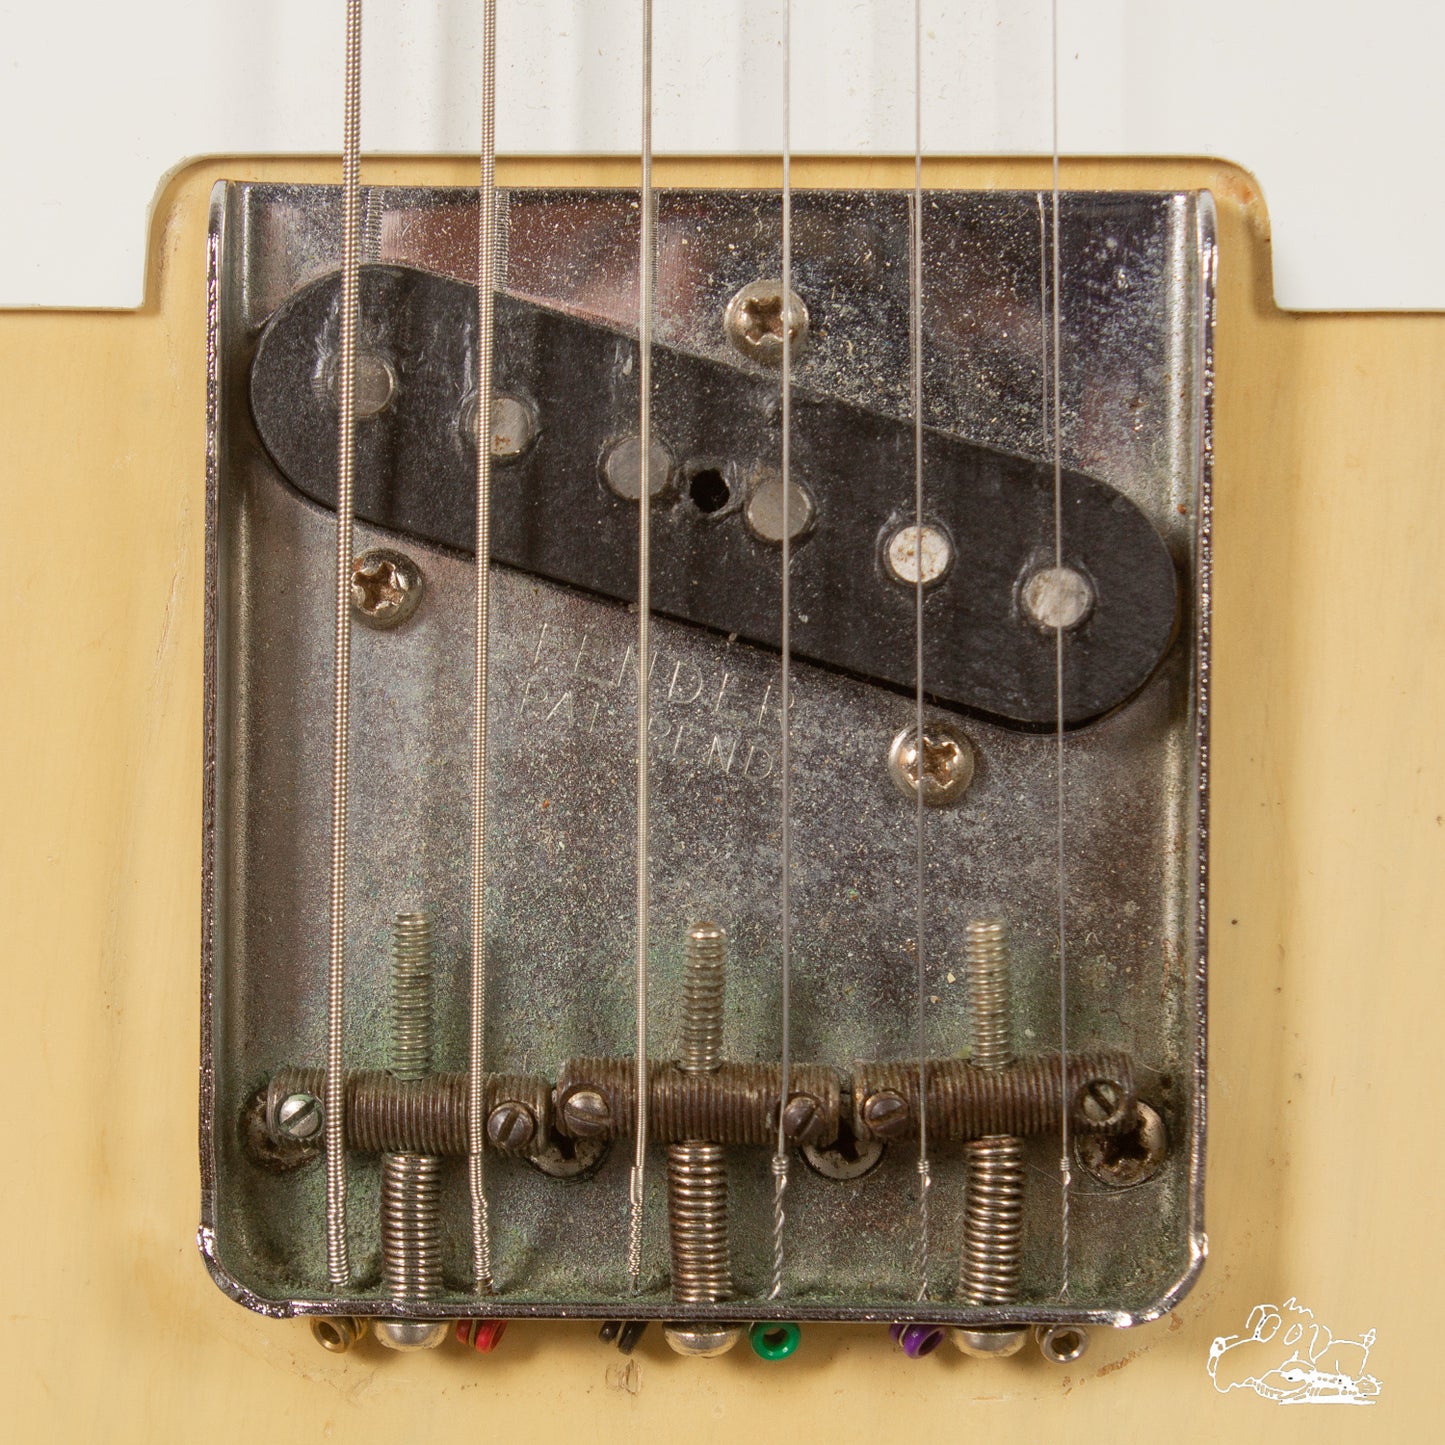 1959 Fender Esquire